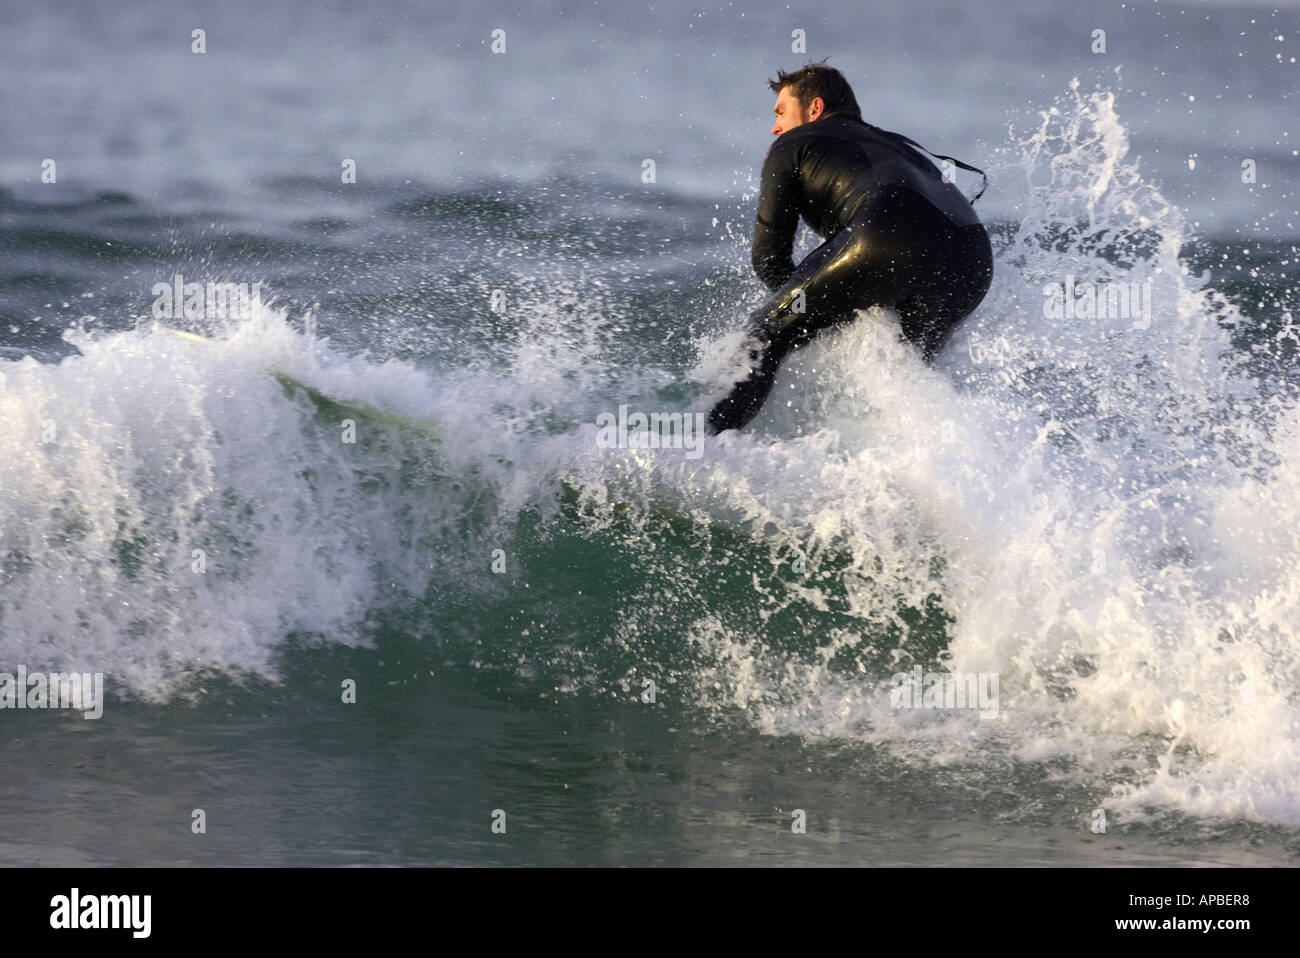 männliche Surfer im Neoprenanzug surft durch Welle aus weißen Felsen Strand Portrush County Antrim-Nordirland Stockfoto